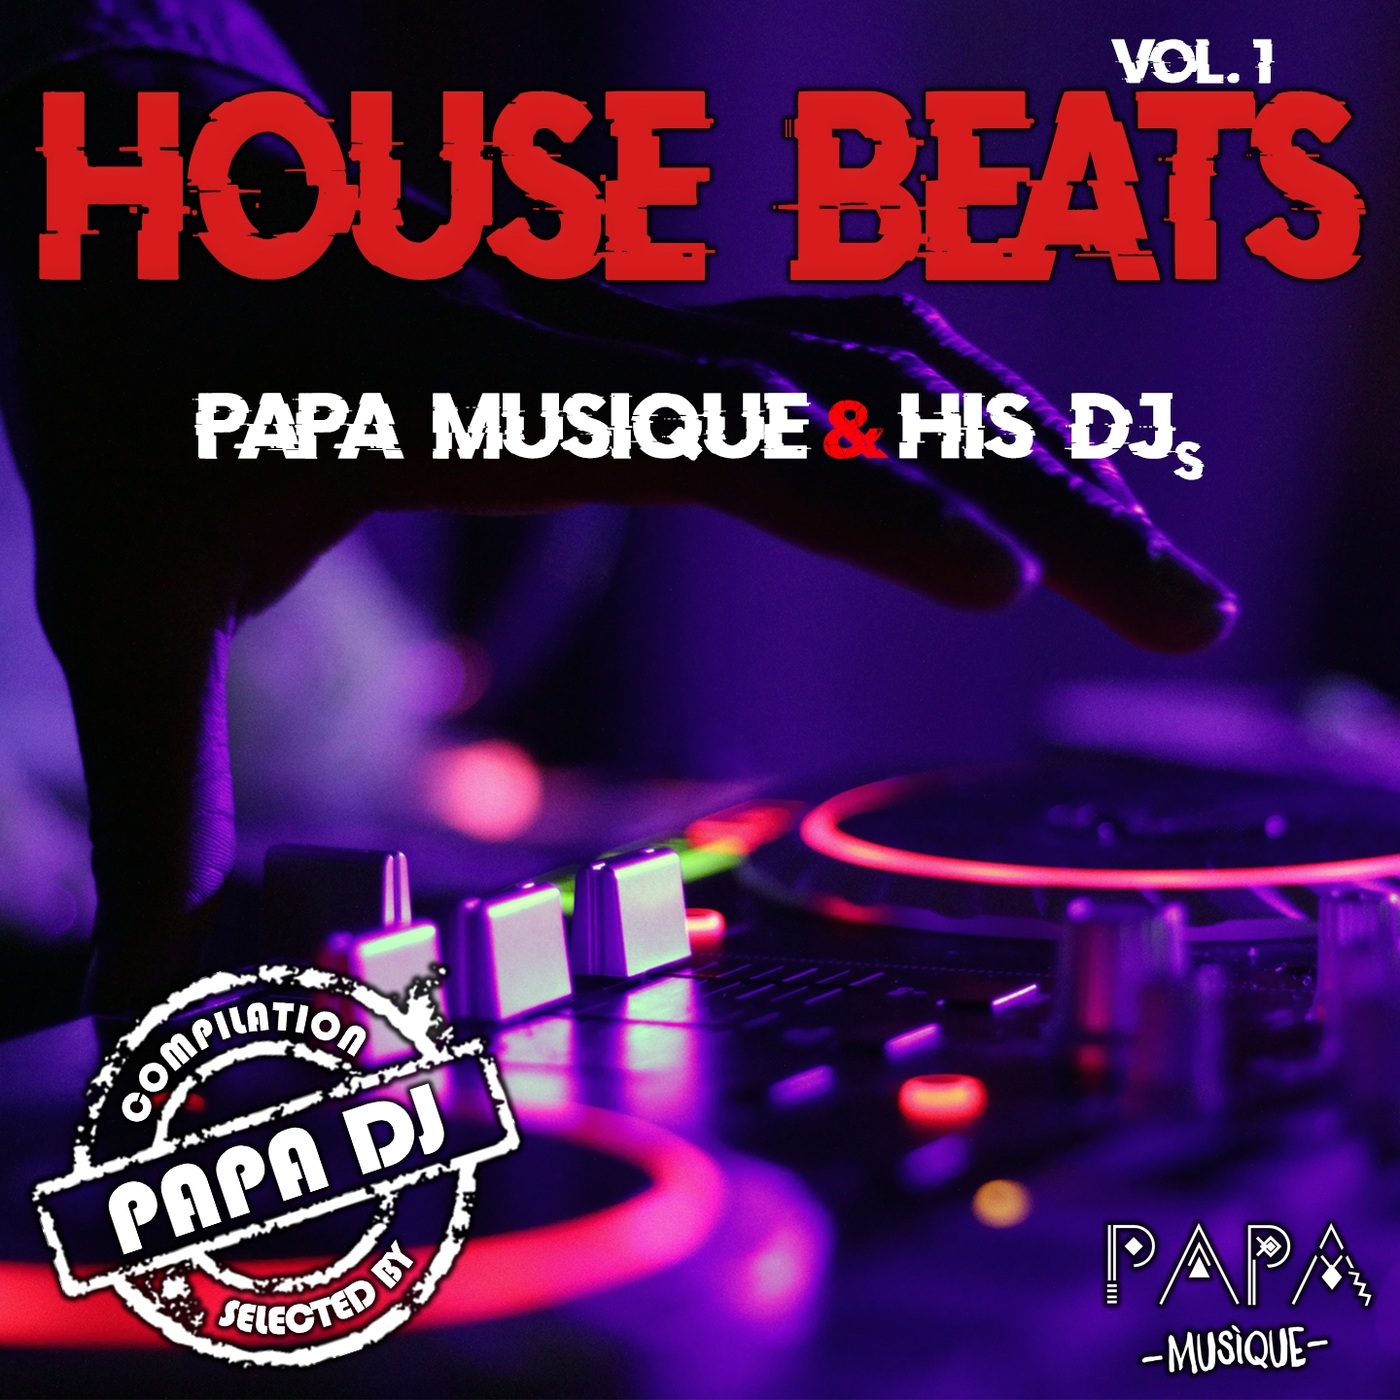 VA - House Beats - Vol. 1 (Papa Musique & His DJS) / Papa Musique